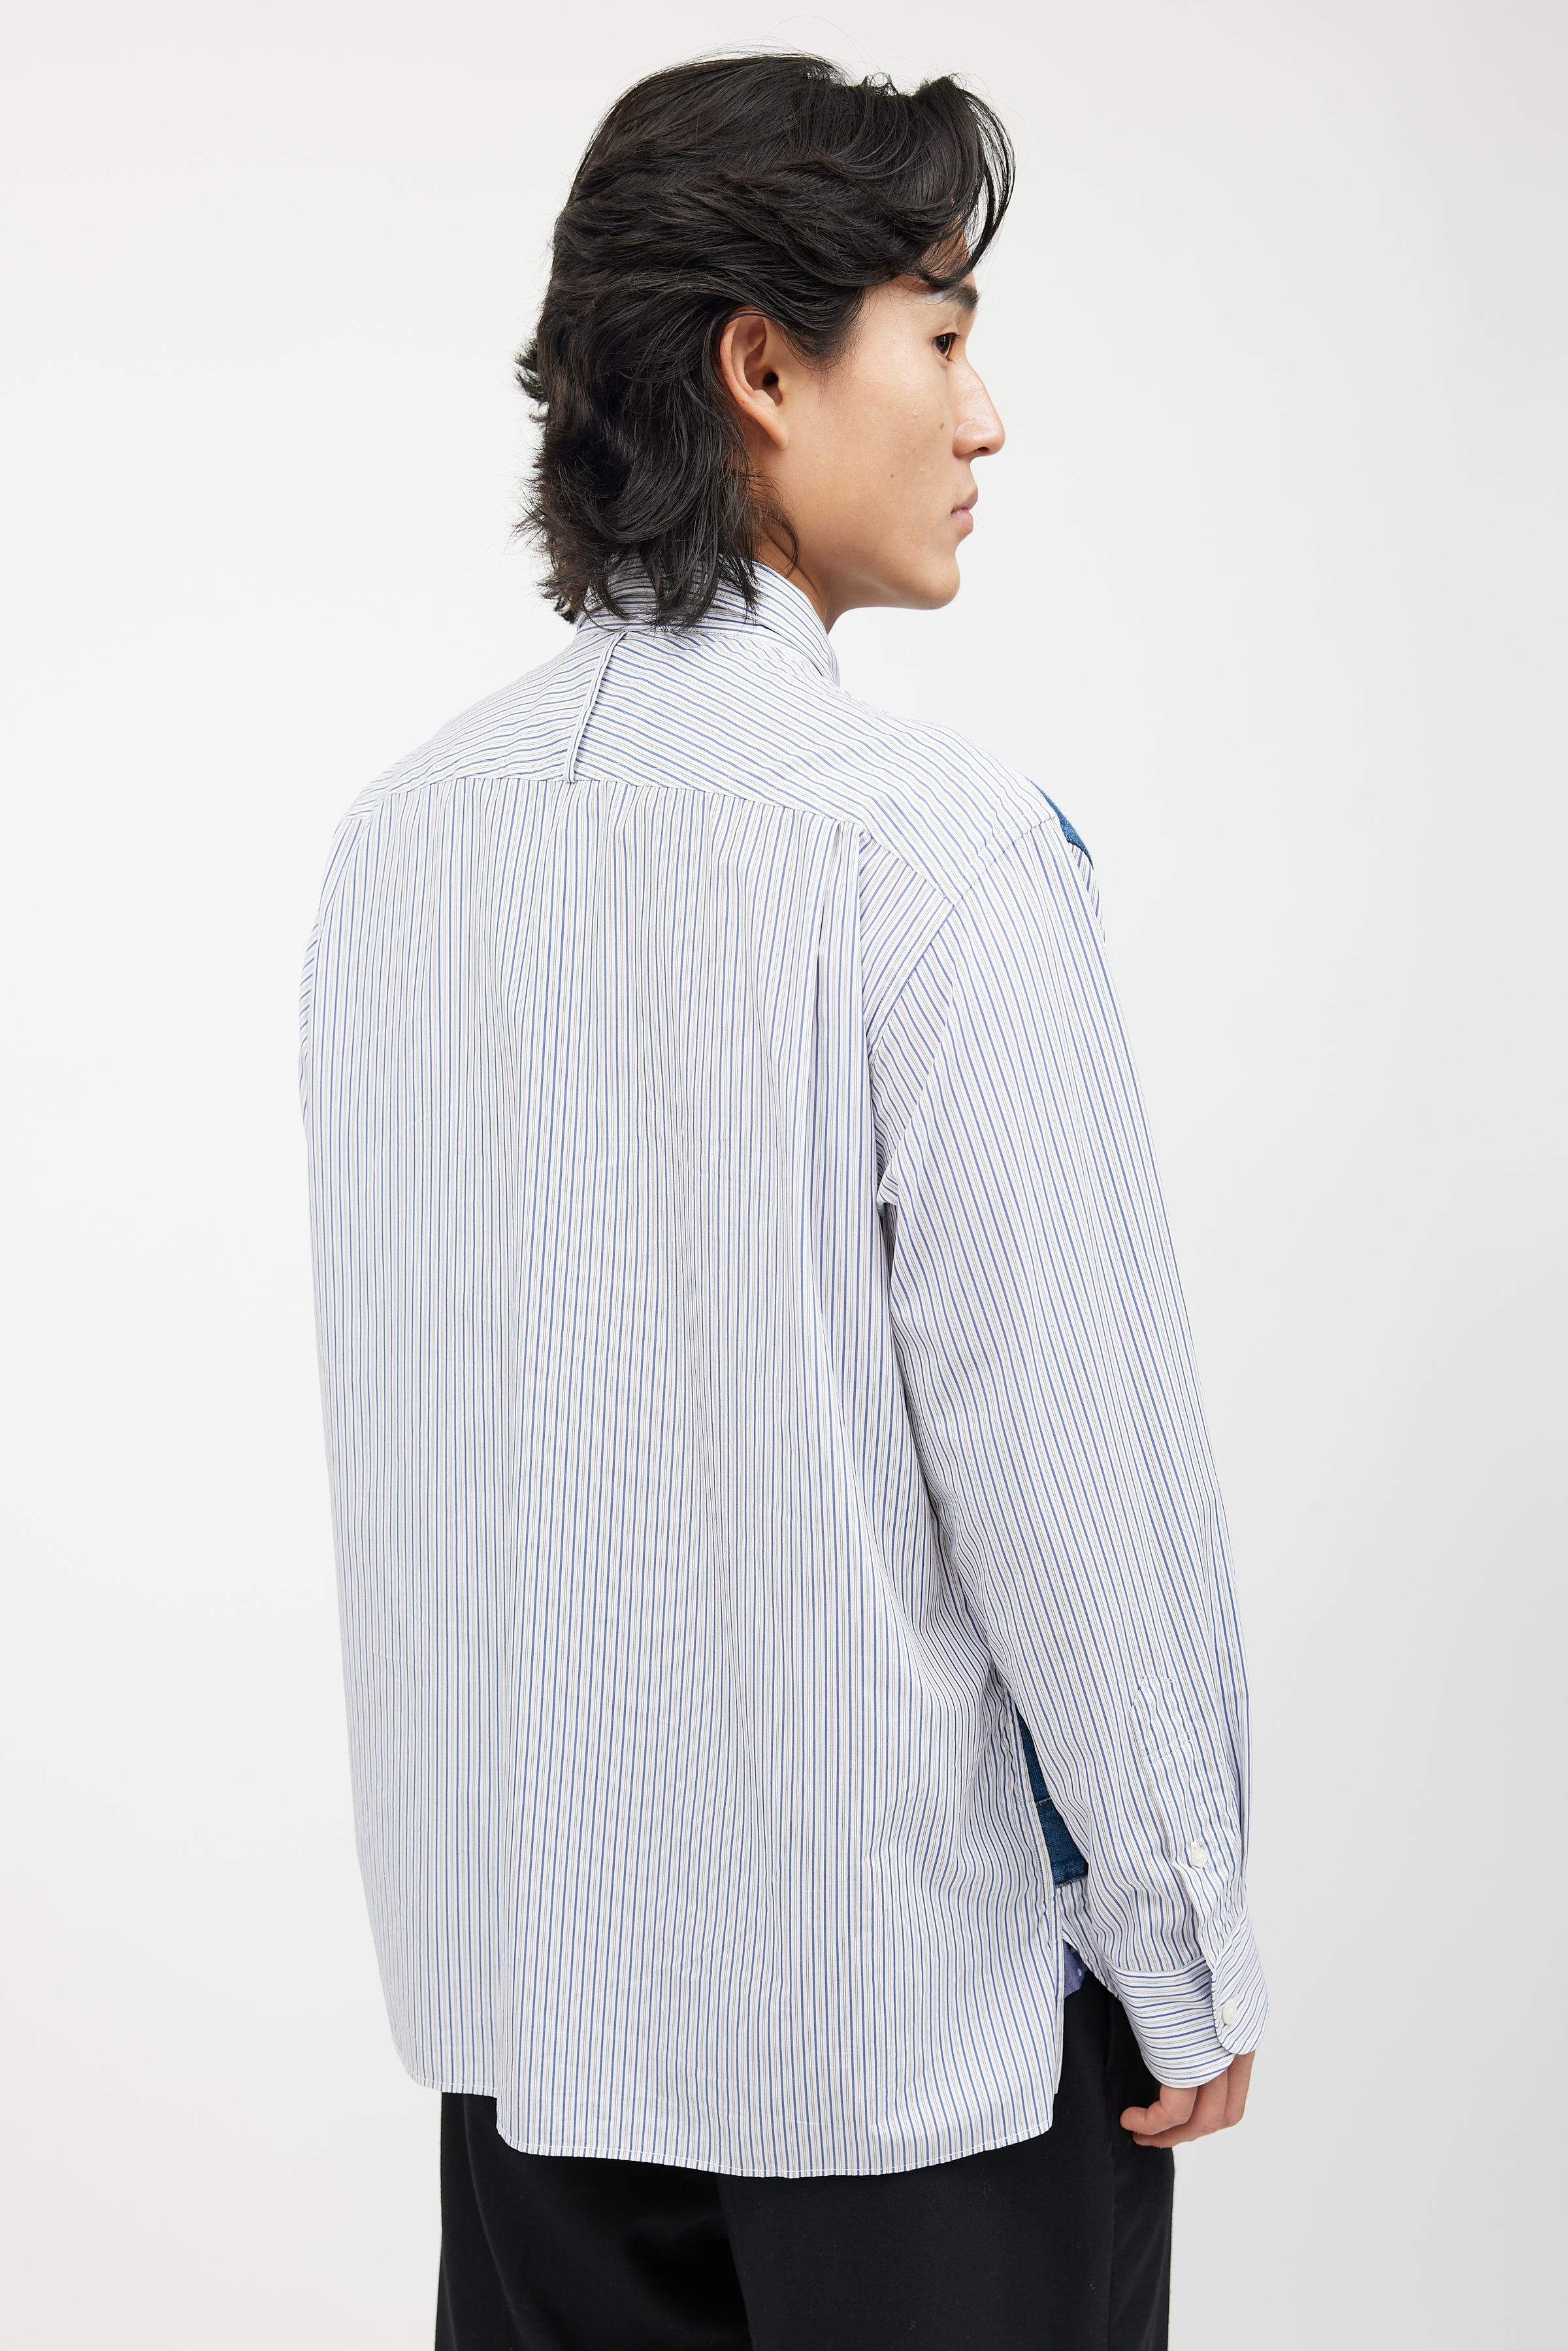 Junya Watanabe // X Levi's Blue & White Striped Denim Shirt – VSP 